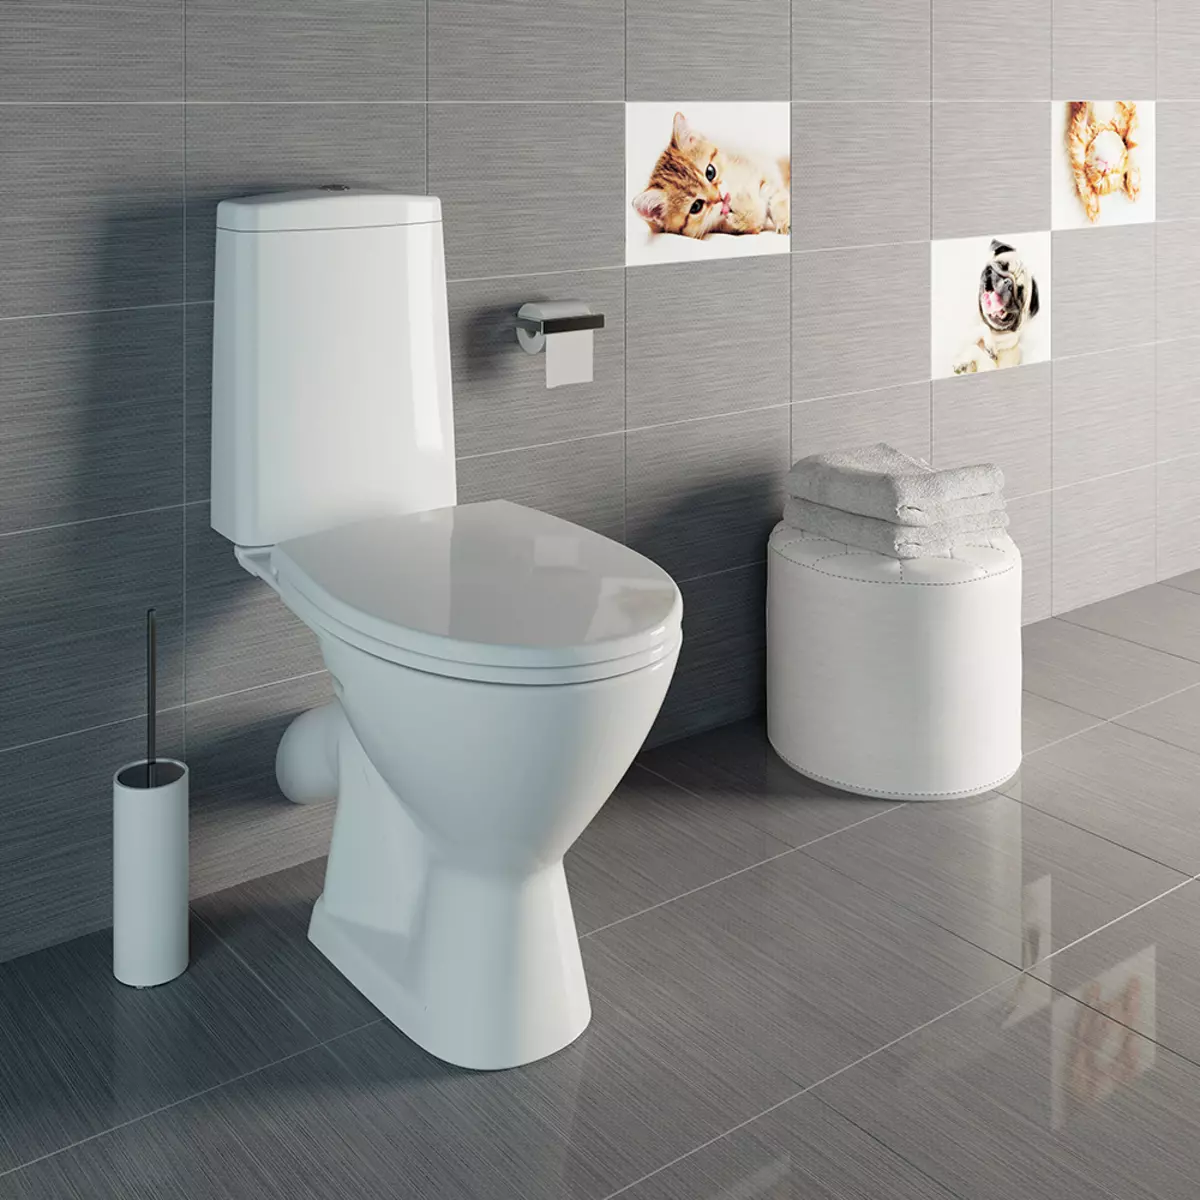 Toalett Bowl Dimensjoner: Standard bredde og lengde på innebygde og gulv toalettskåler. Minimal dimensjoner av forskjellige modeller for toalettet 10481_12